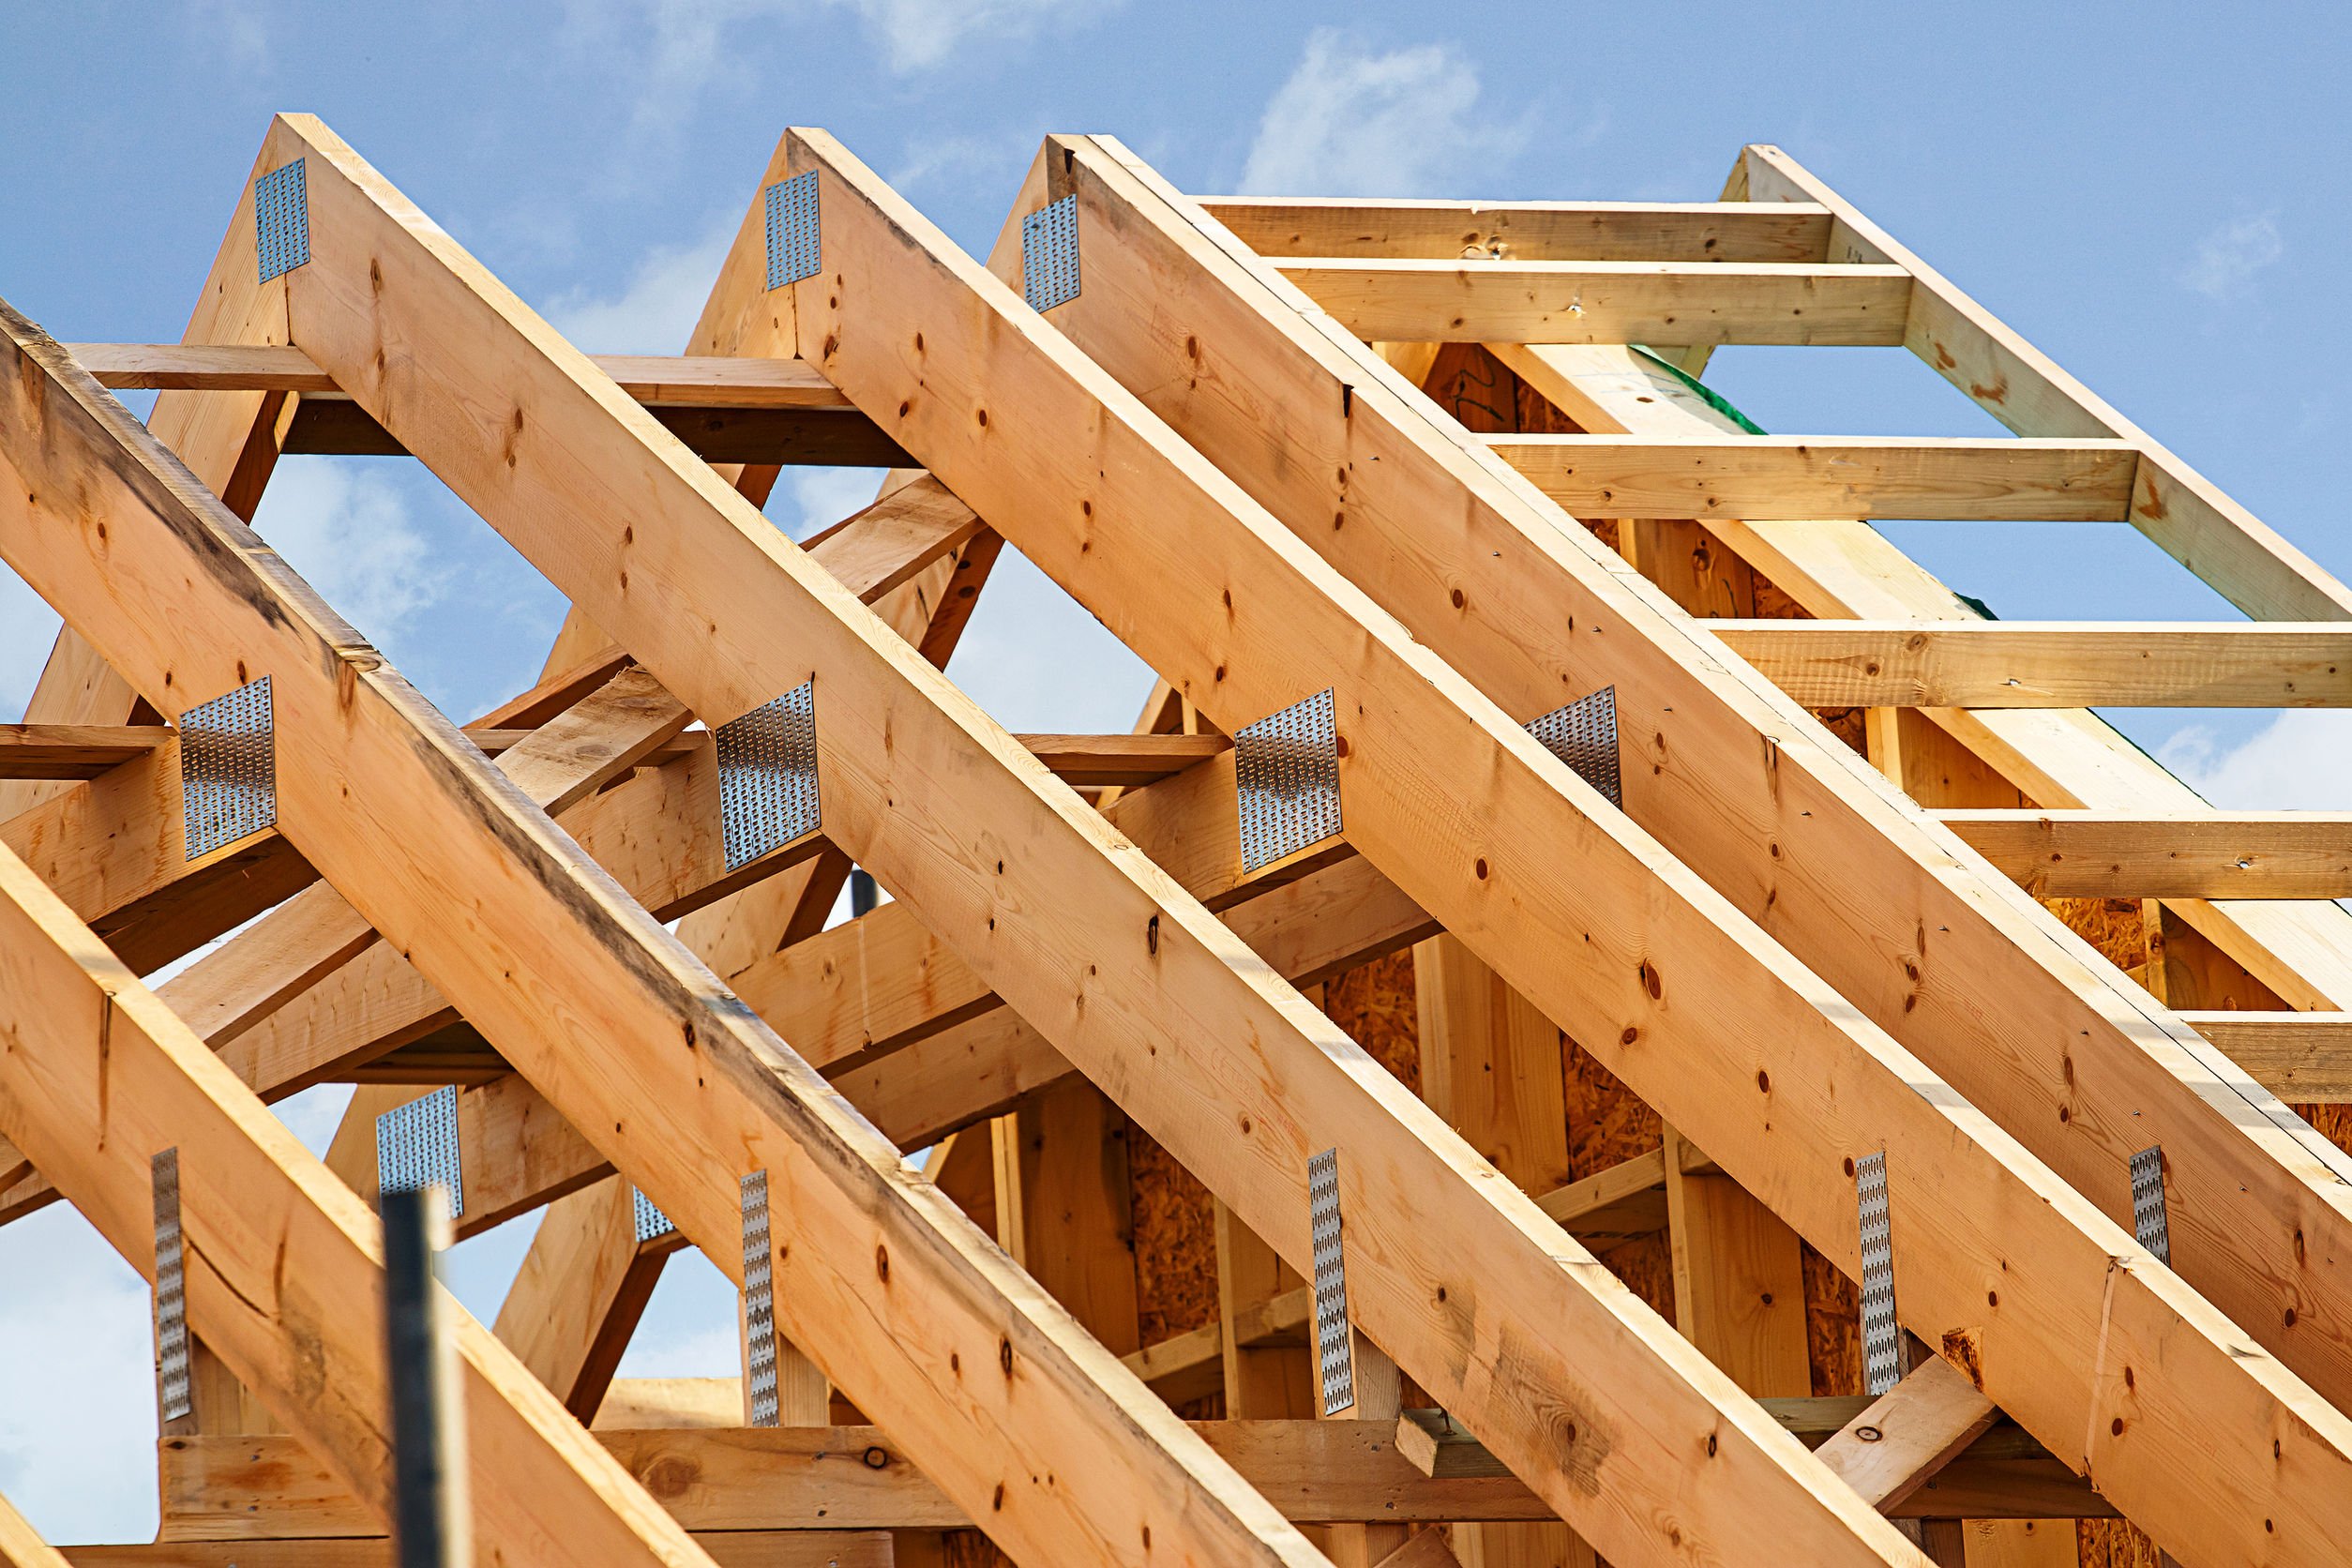 Bâtiment à ossature bois standard avec gros plan sur les fermes de la charpente en bois du toit